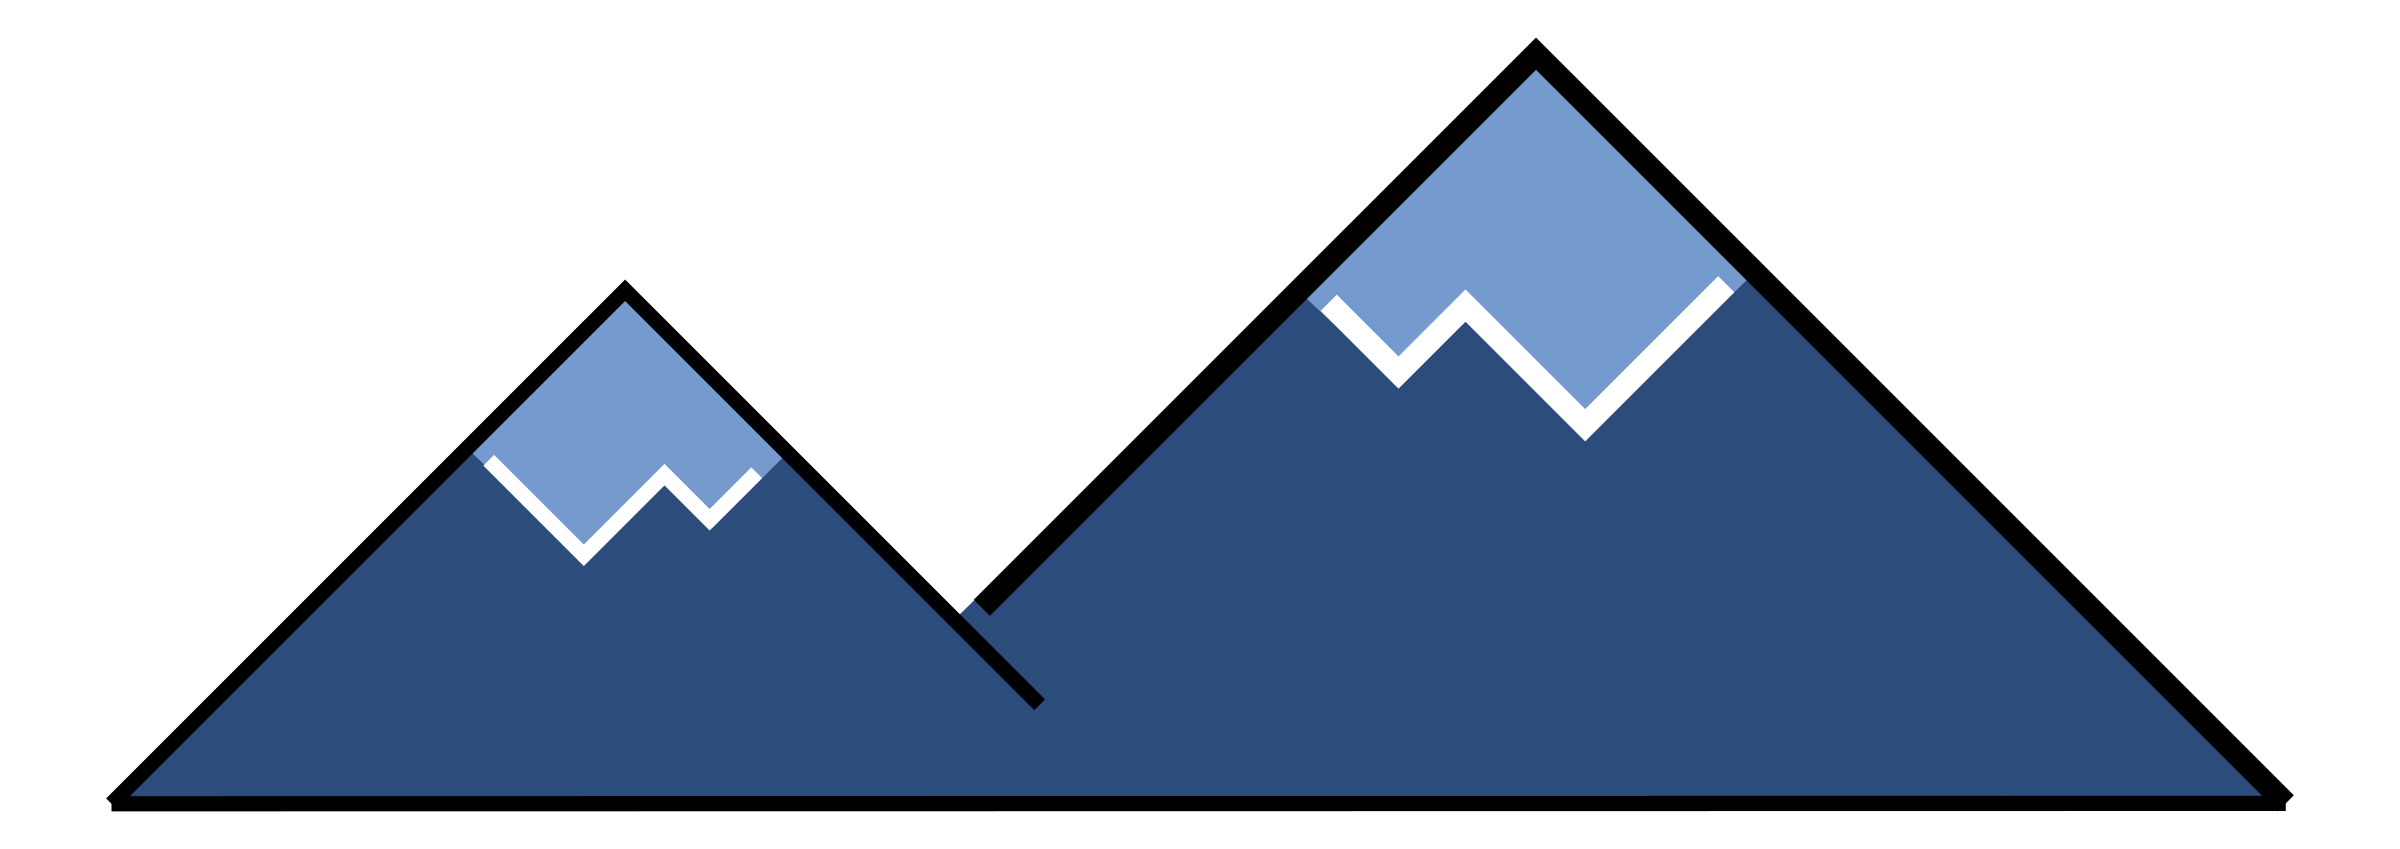 Minimal icon big image. Clipart mountain snow mountain